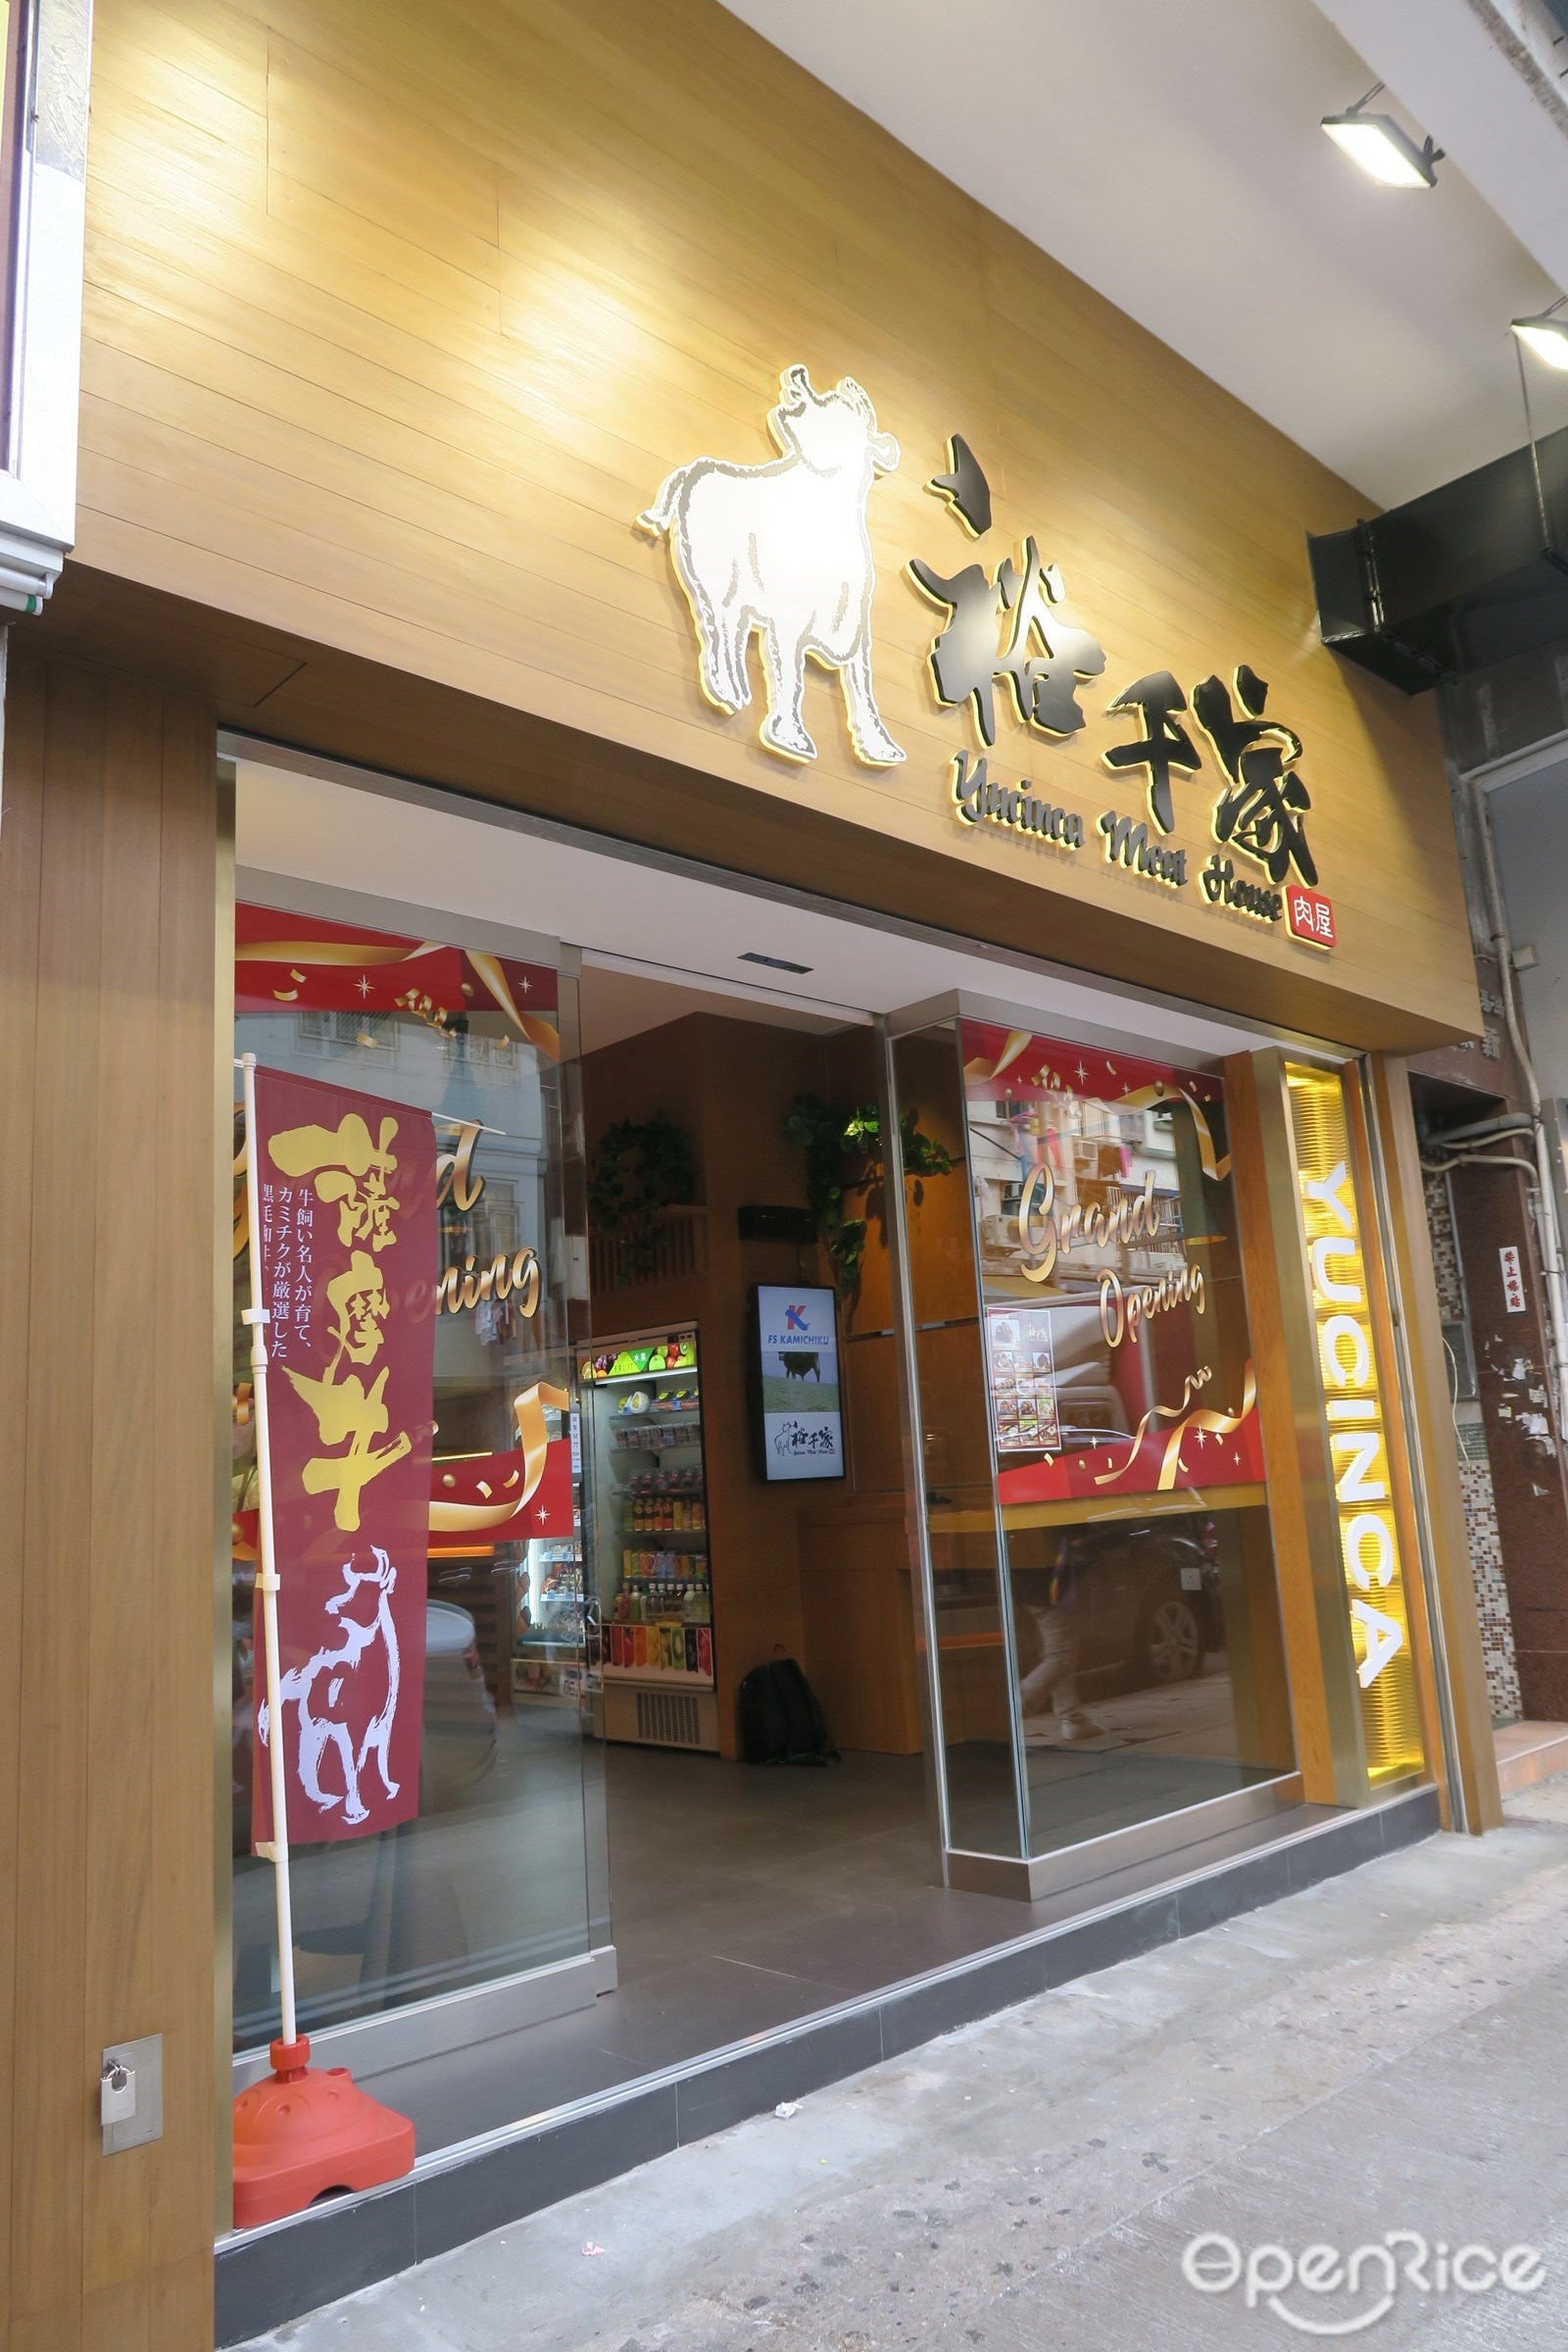 全港首間主打薩摩和牛店九龍城立食和牛漢堡| Openrice Hong Kong